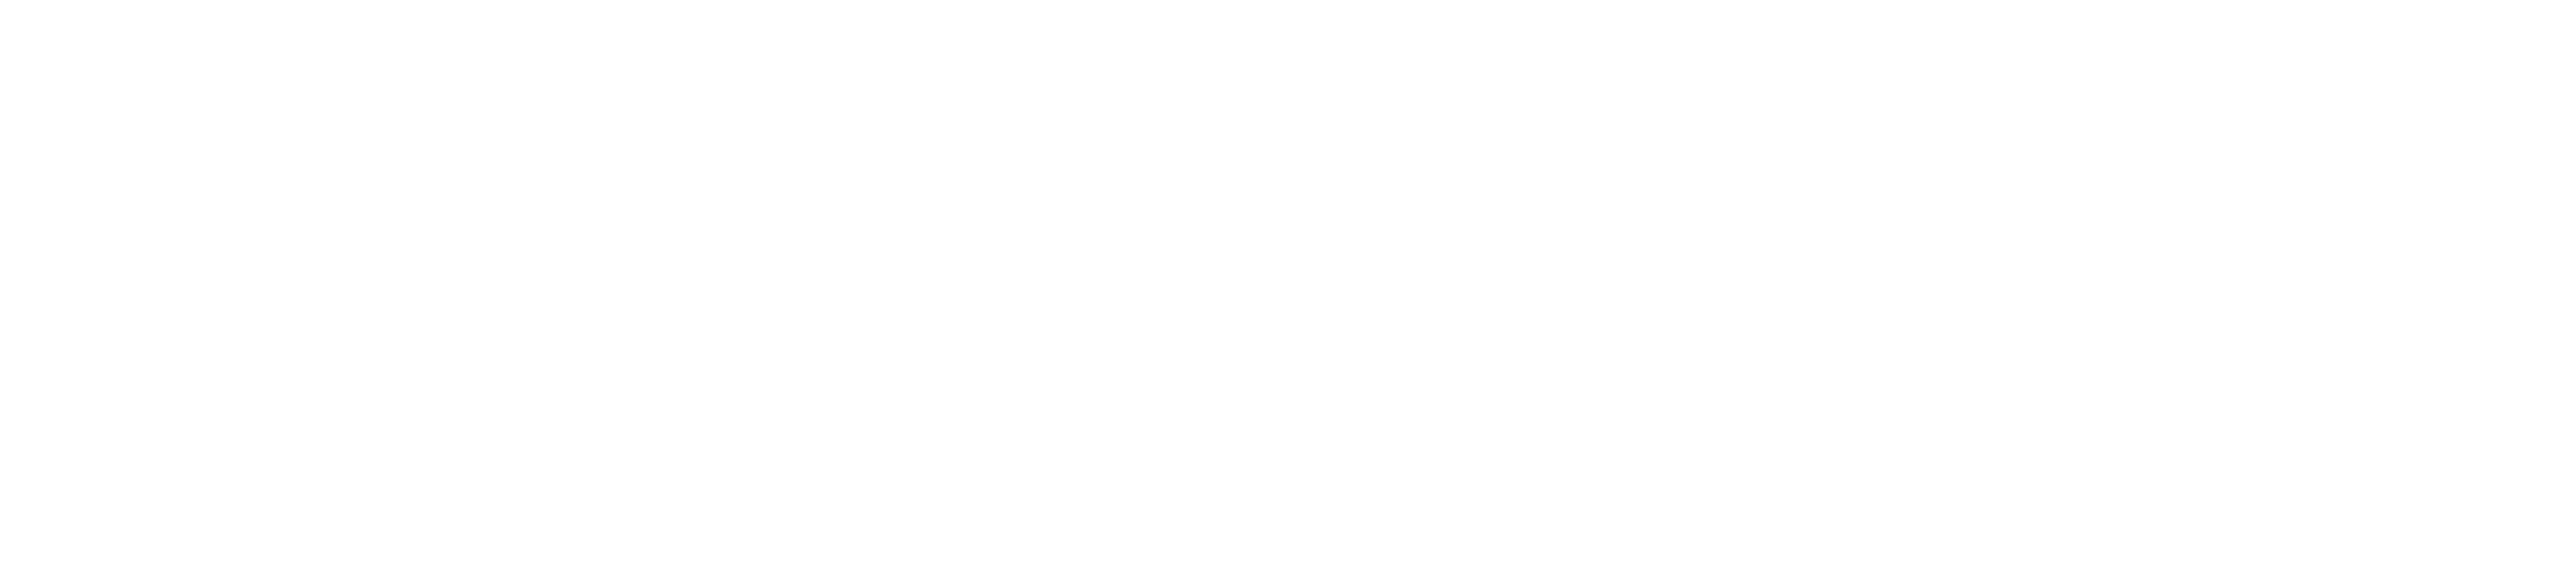 Smart at - 無償版 -